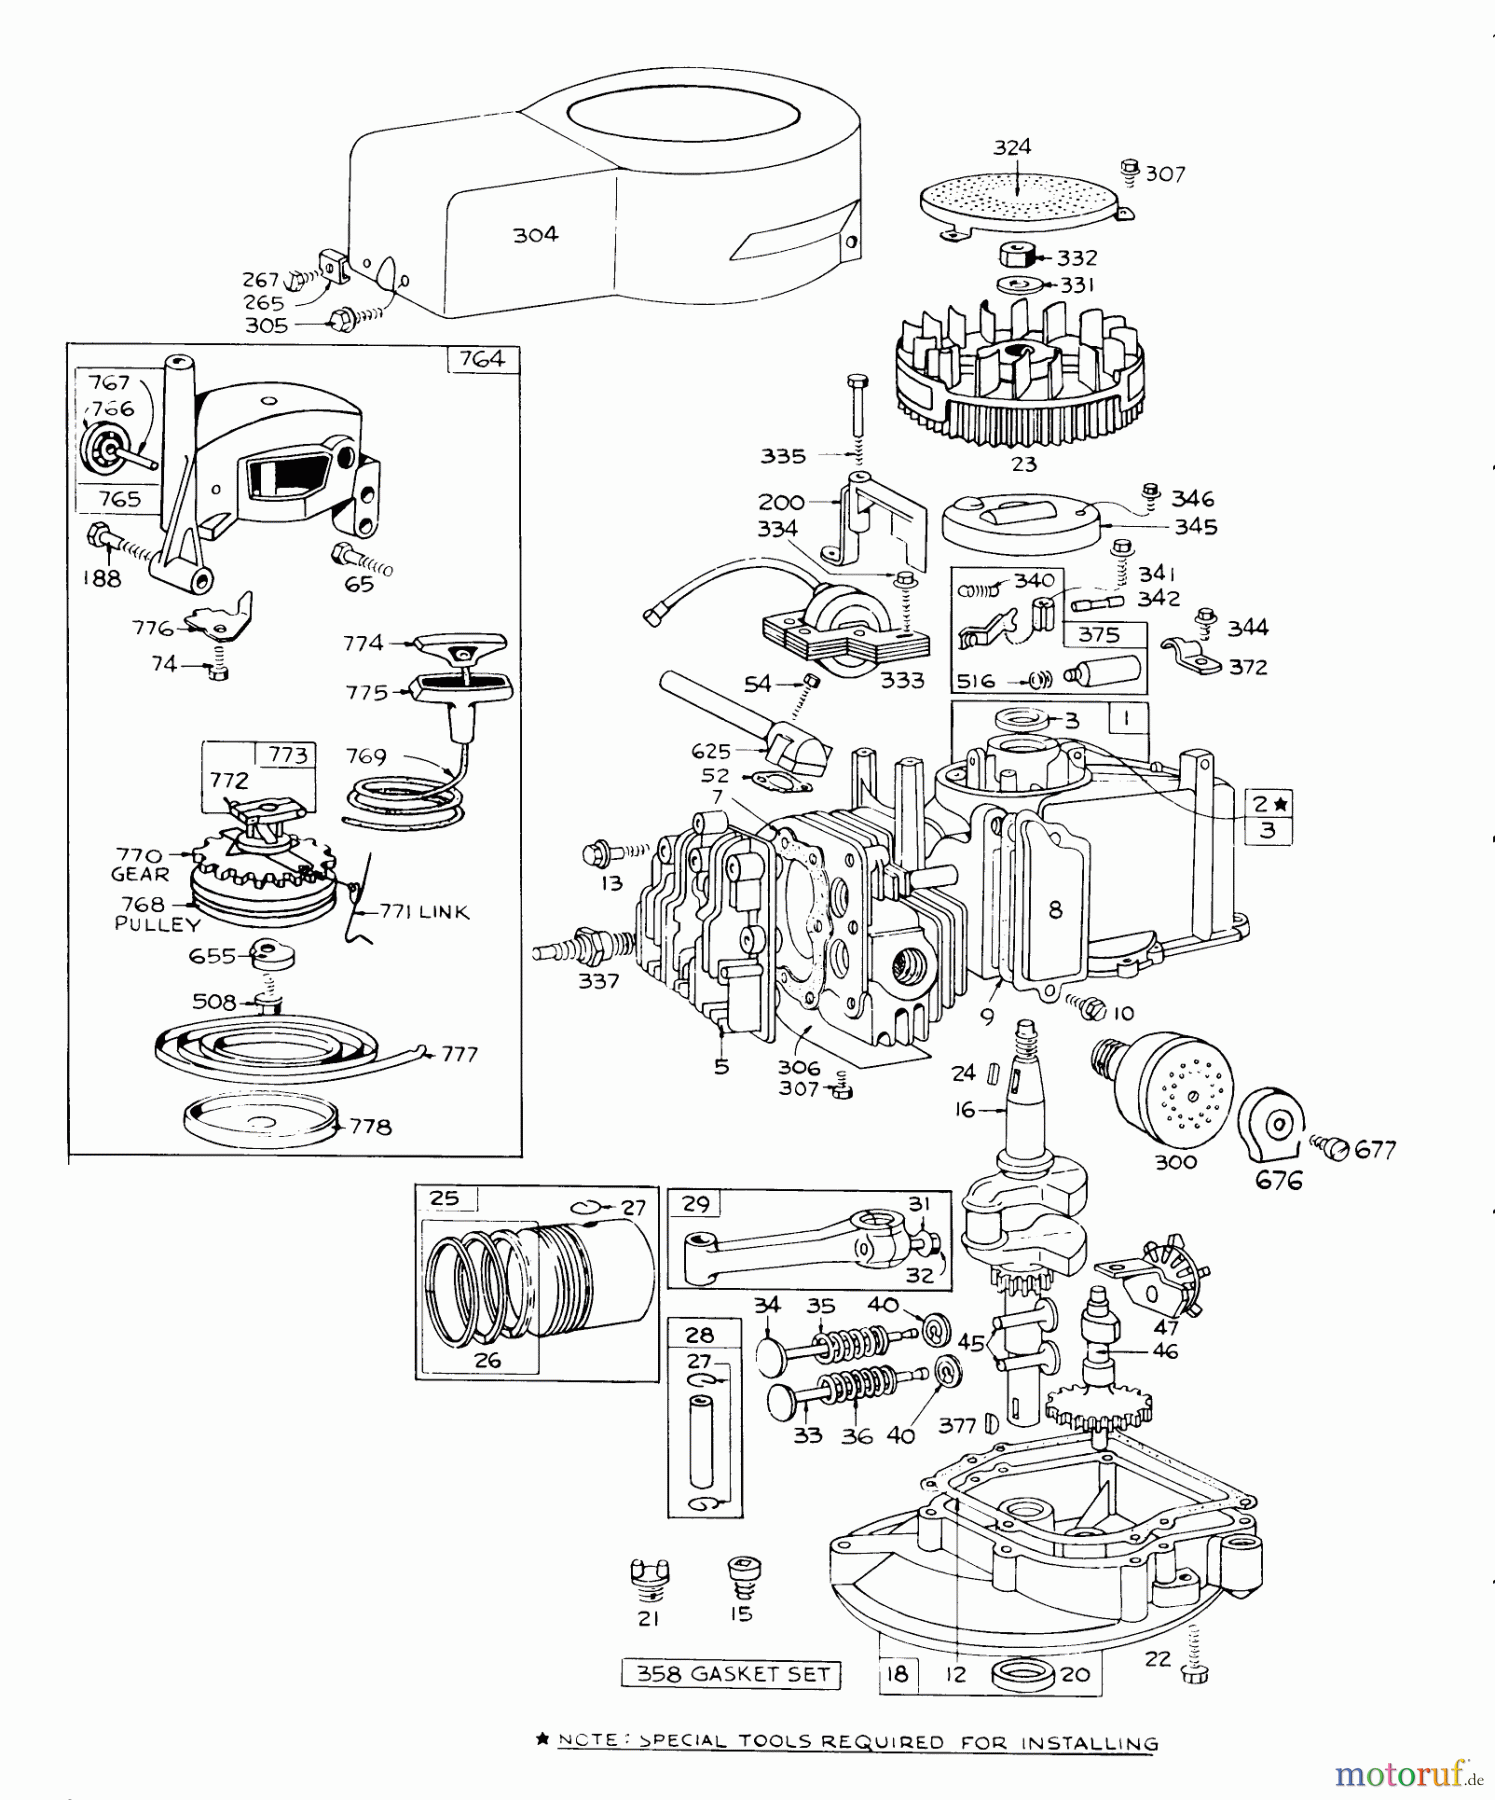  Toro Neu Mowers, Walk-Behind Seite 1 16255 - Toro Whirlwind, 1974 (4000001-4999999) ENGINE BRIGGS & STRATTON MODEL 92908-1456-02